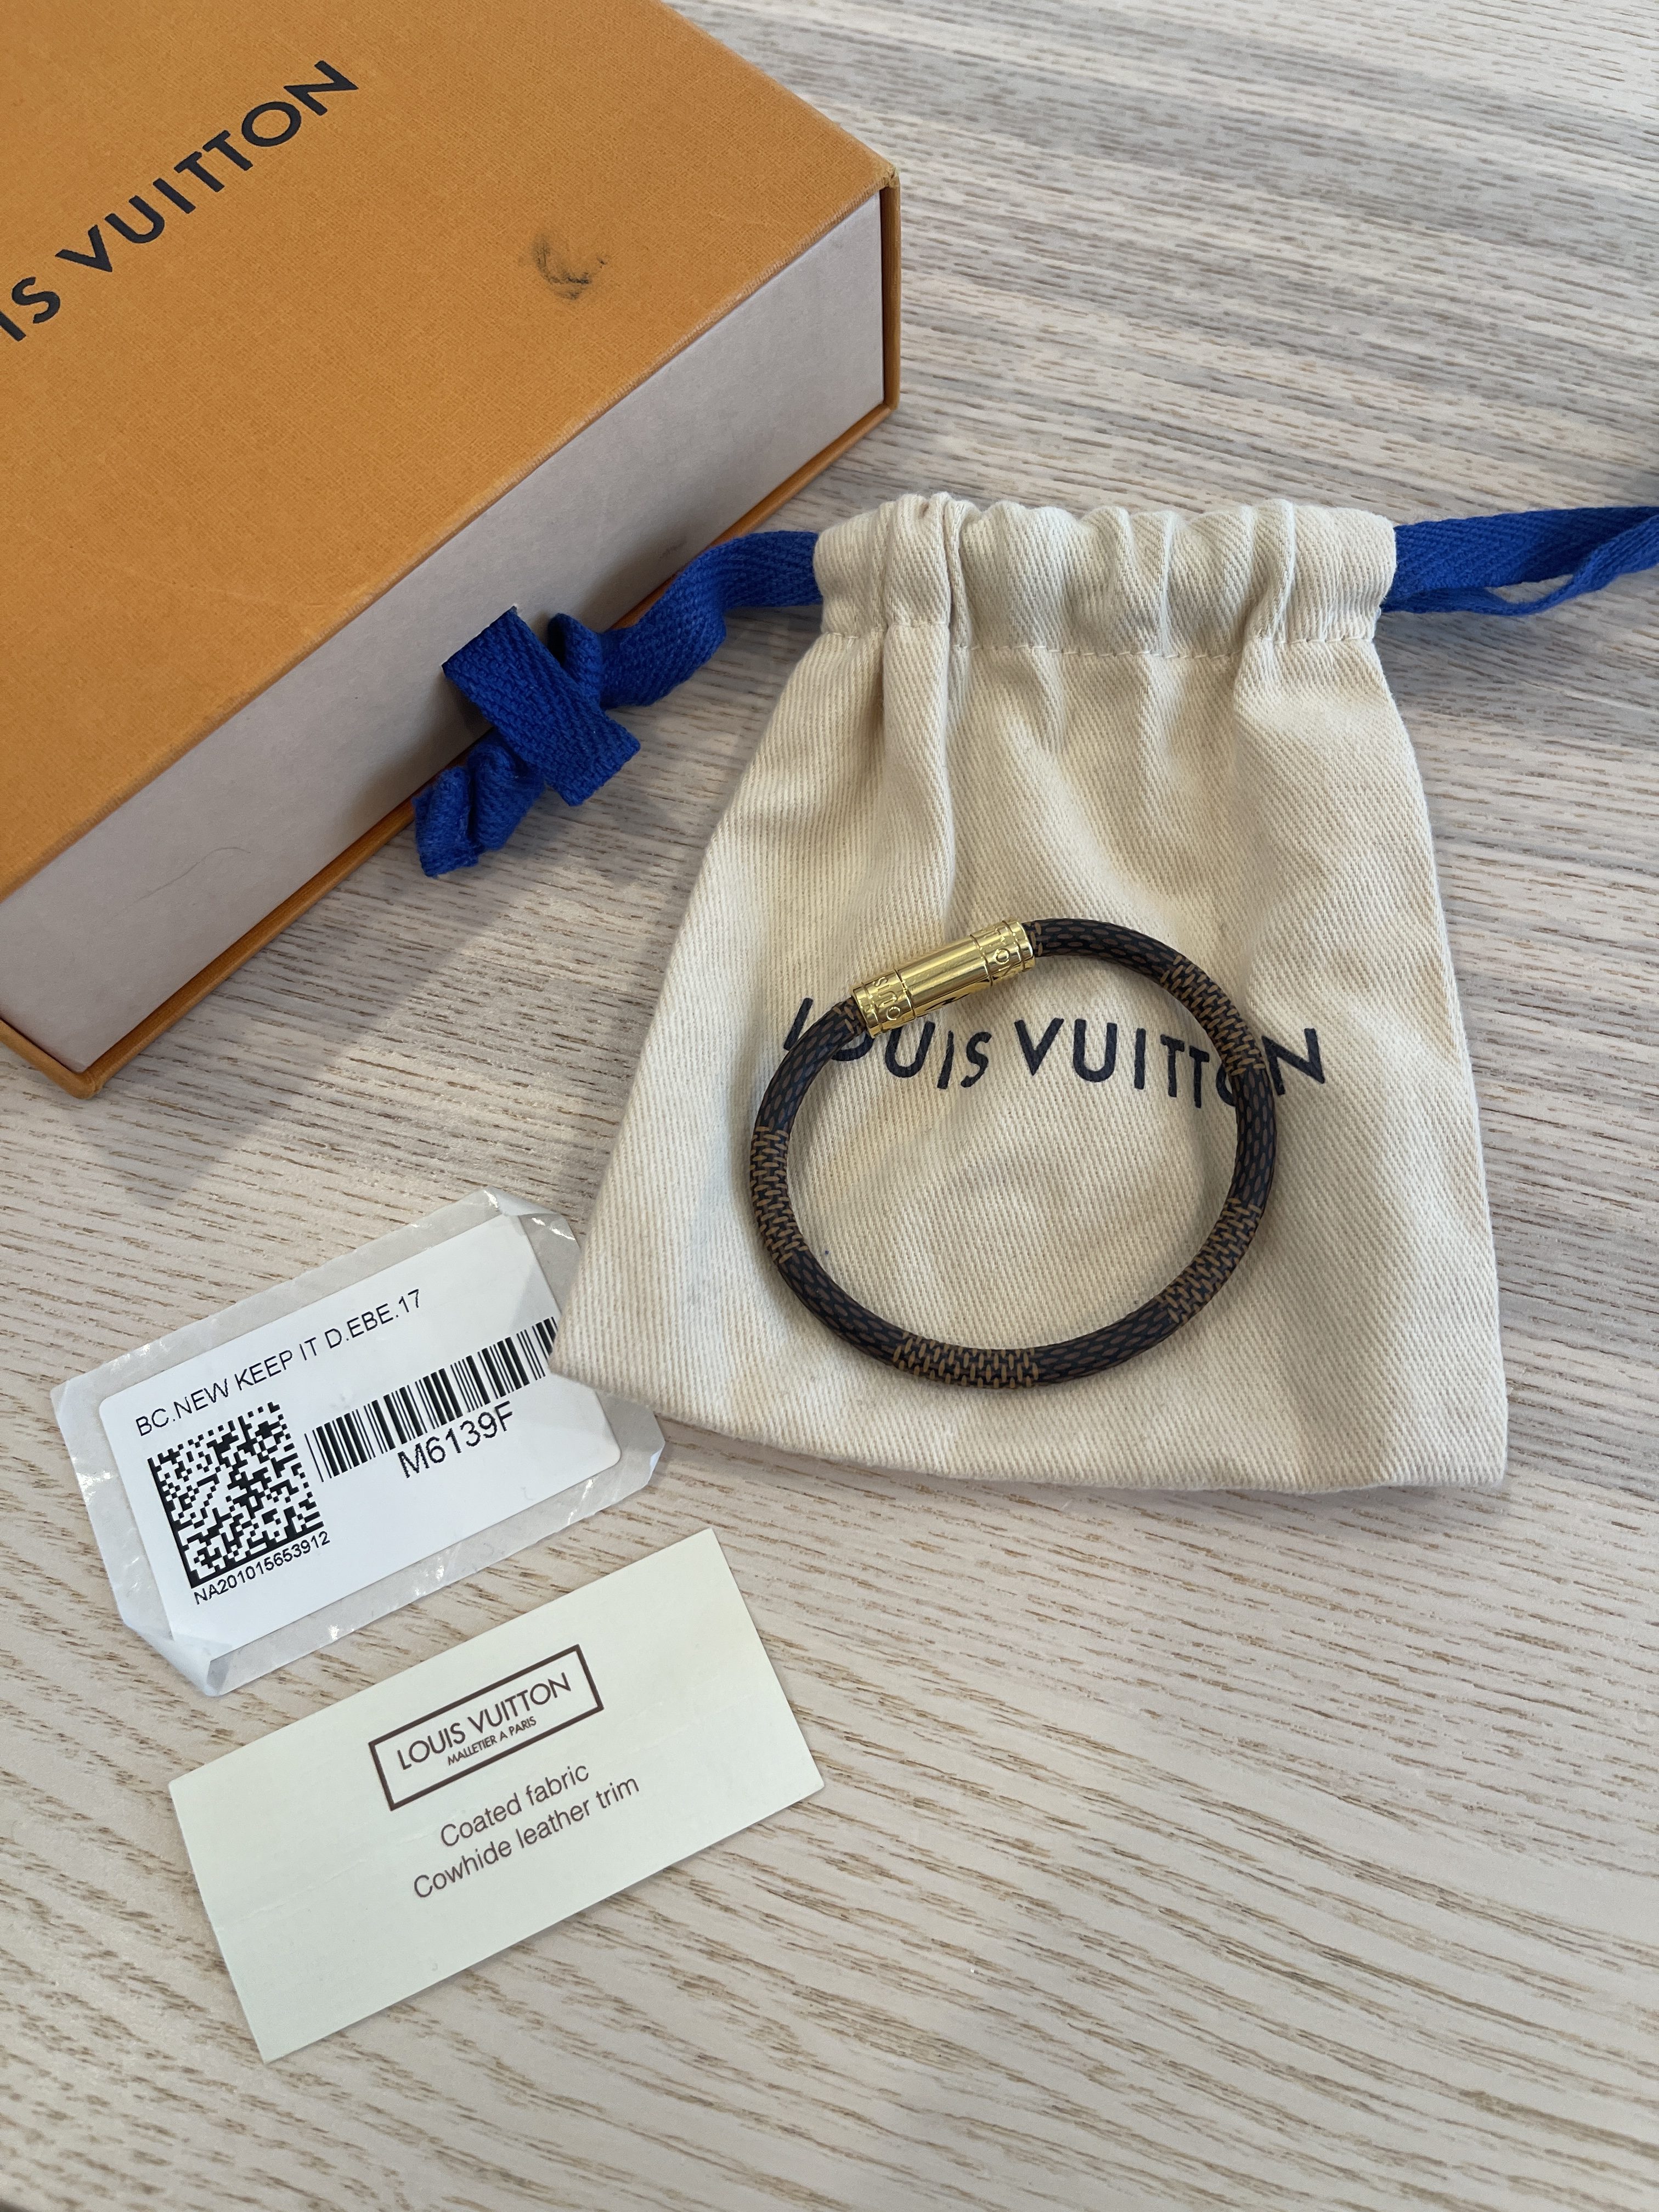 Louis Vuitton Damier Keep It Bracelet